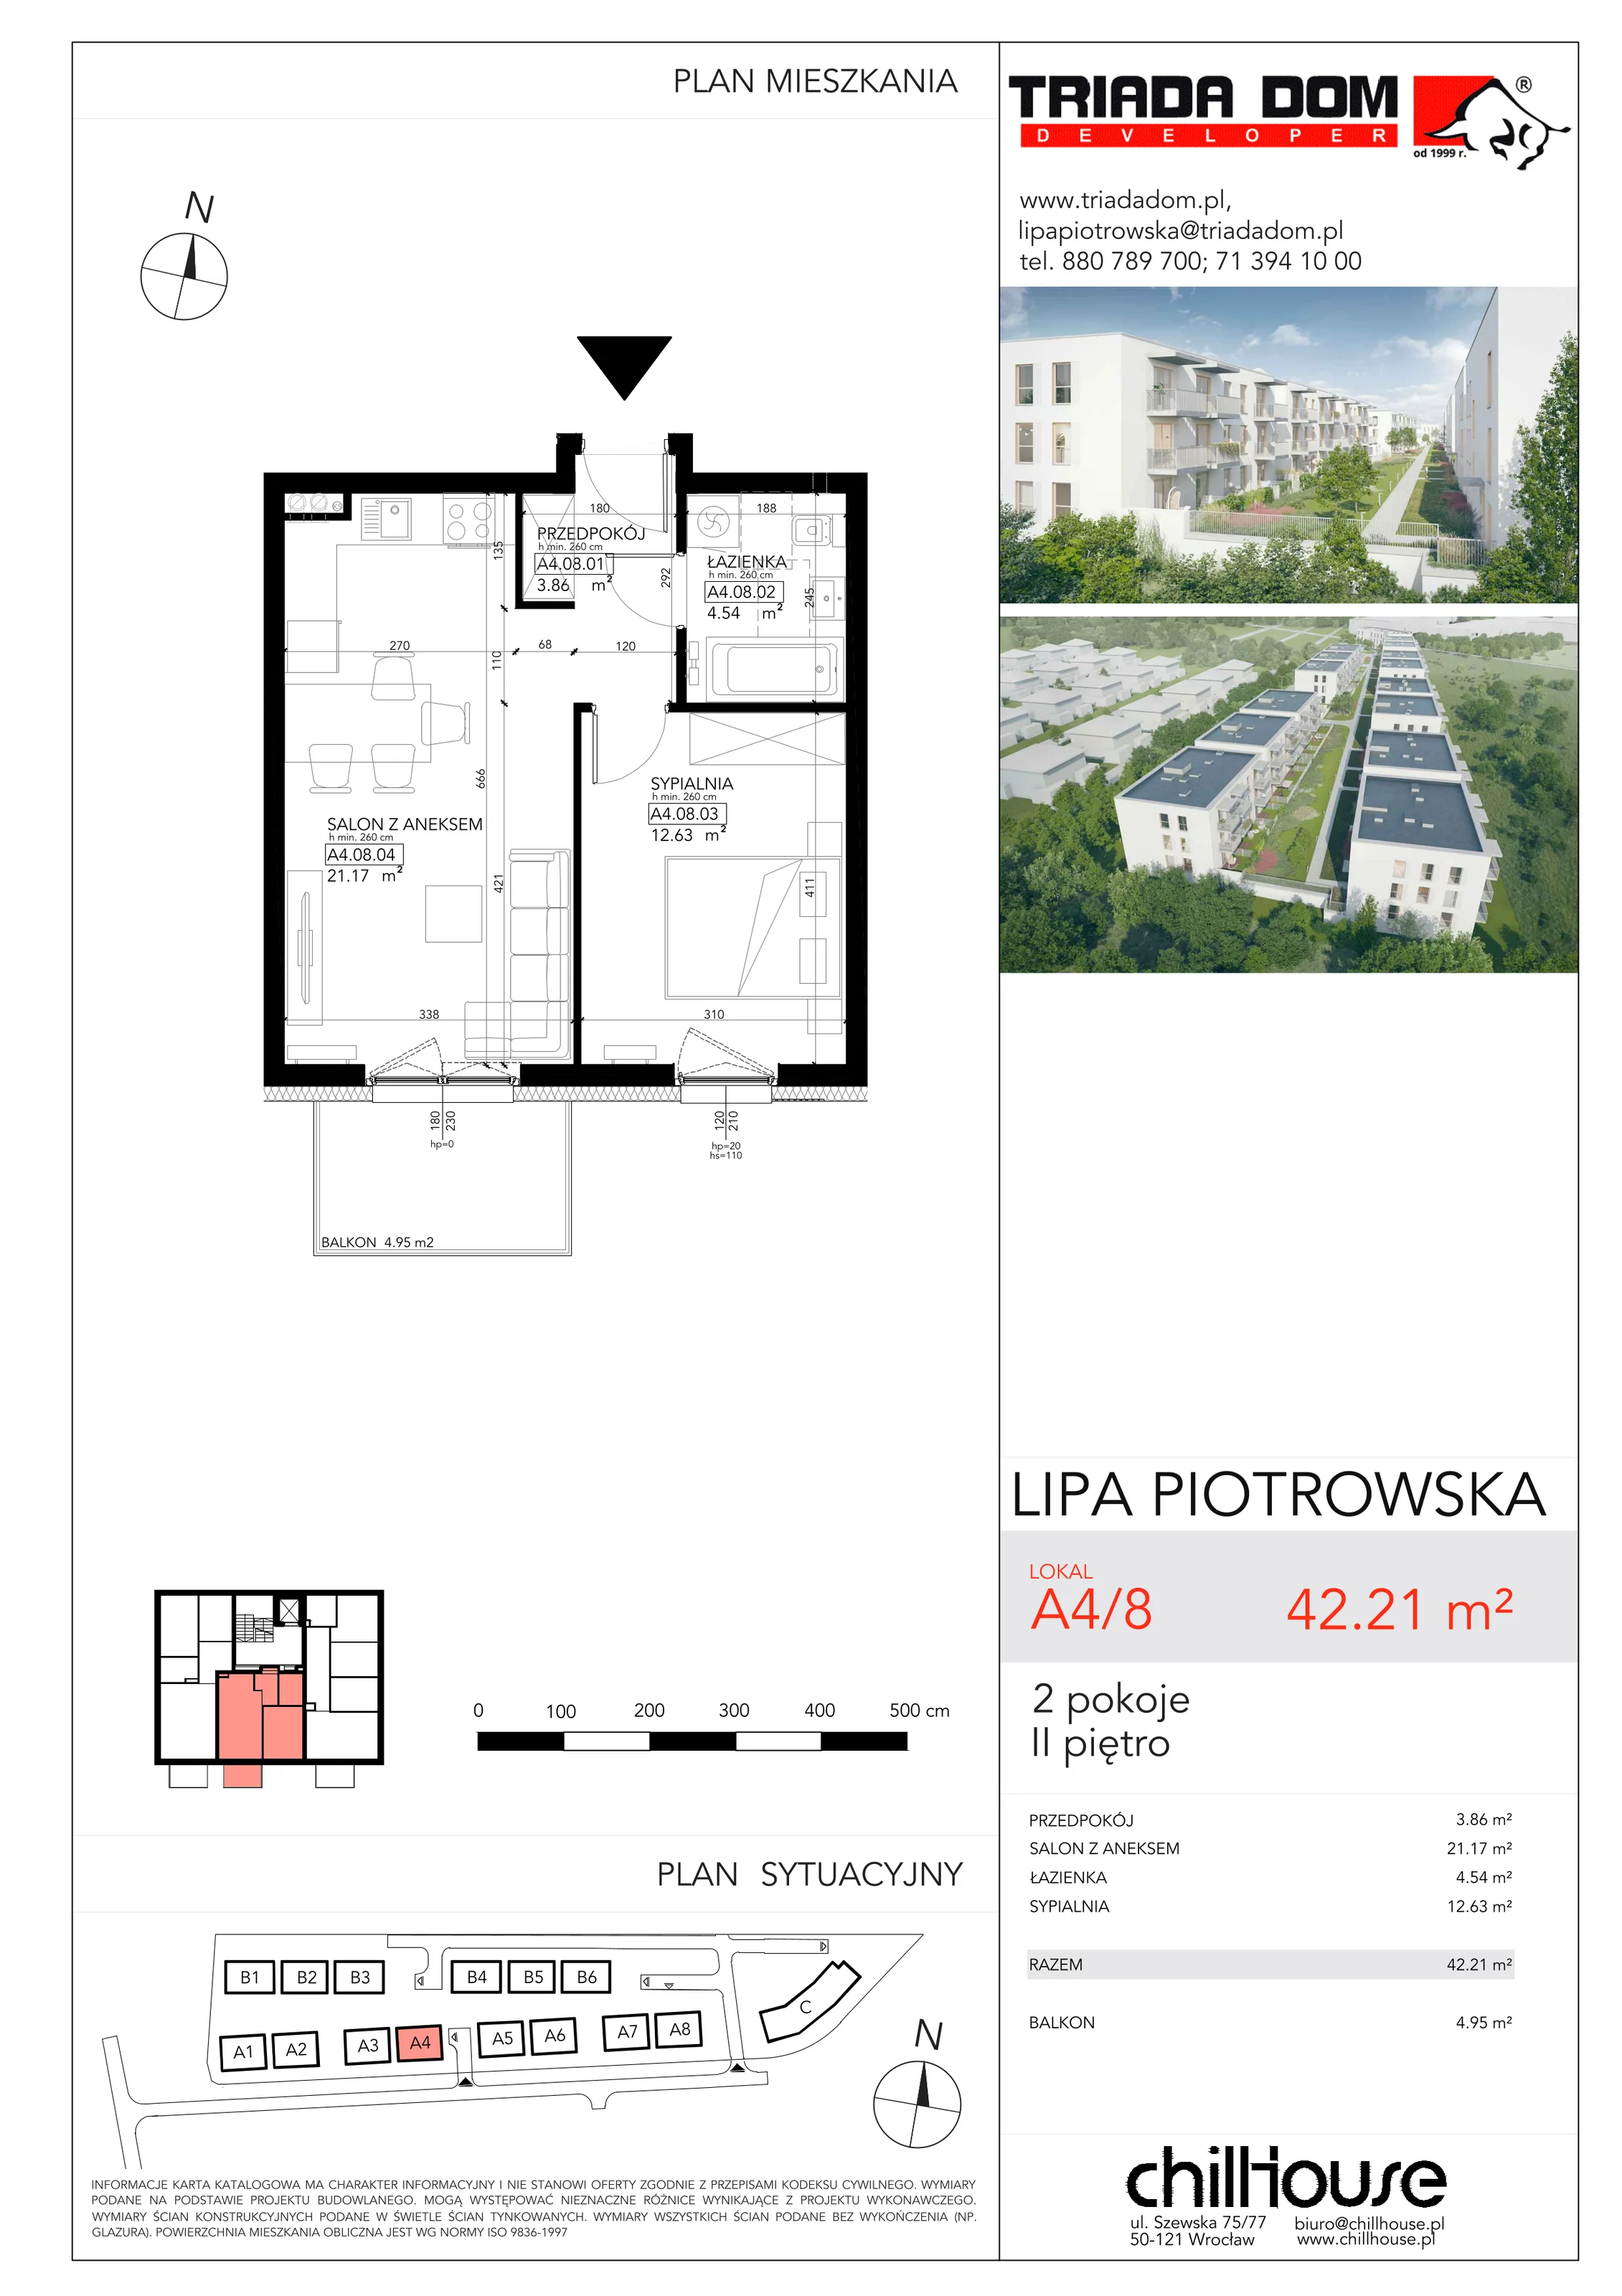 Mieszkanie 42,21 m², piętro 2, oferta nr A48, Lipa Piotrowska, Wrocław, Lipa Piotrowska, ul. Lawendowa / Melisowa